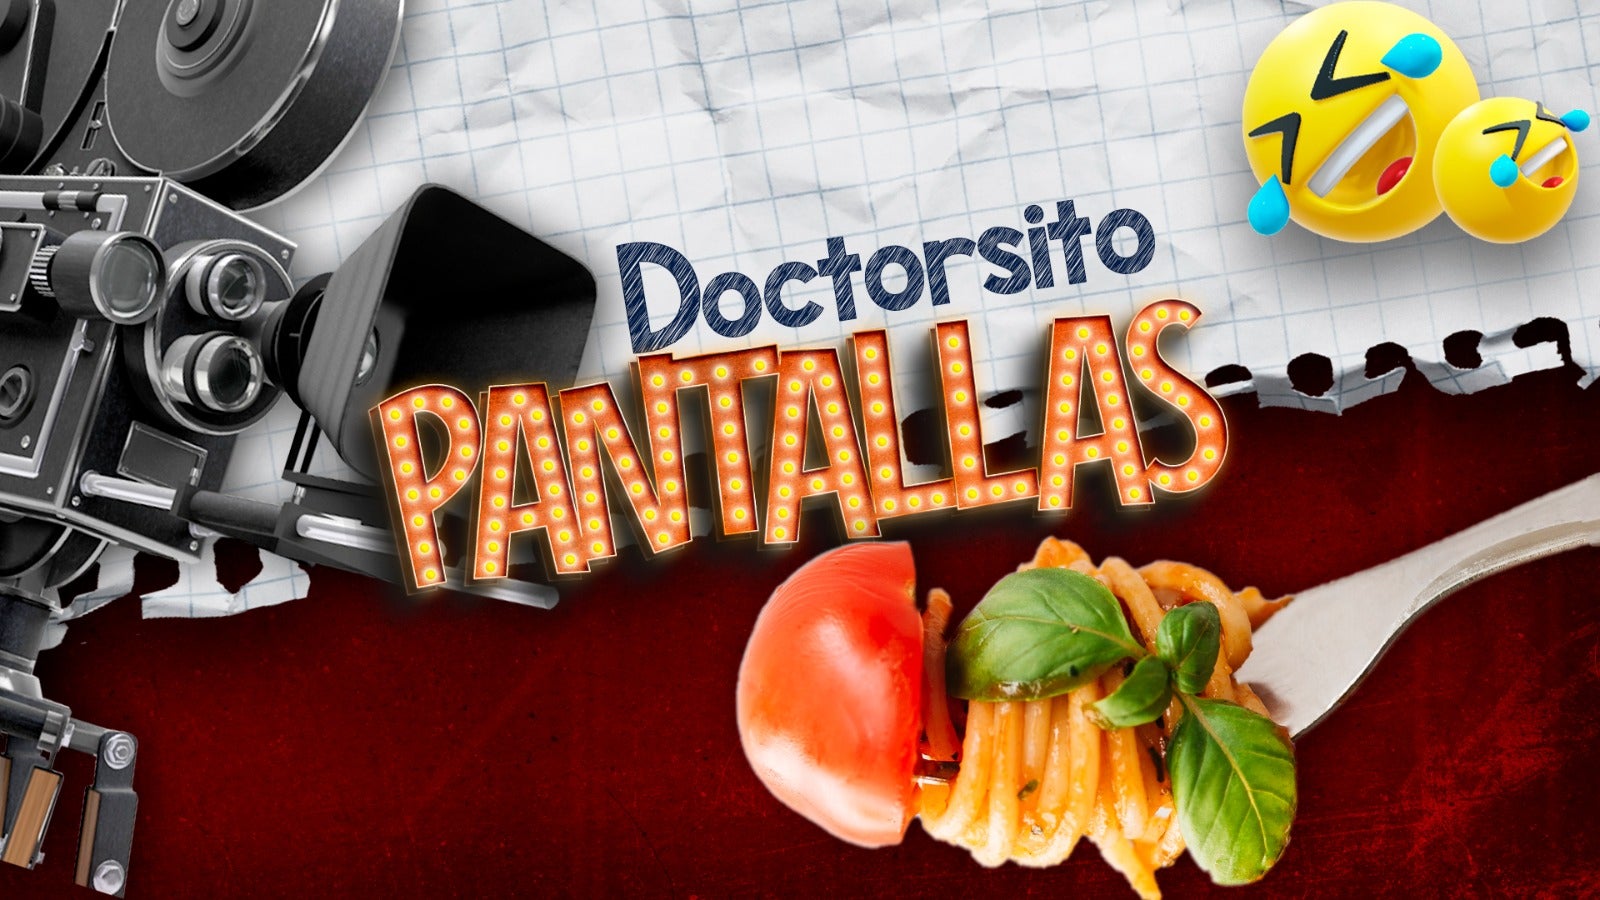 Doctorsito Pantallas: El único alimento mágicamente curativo